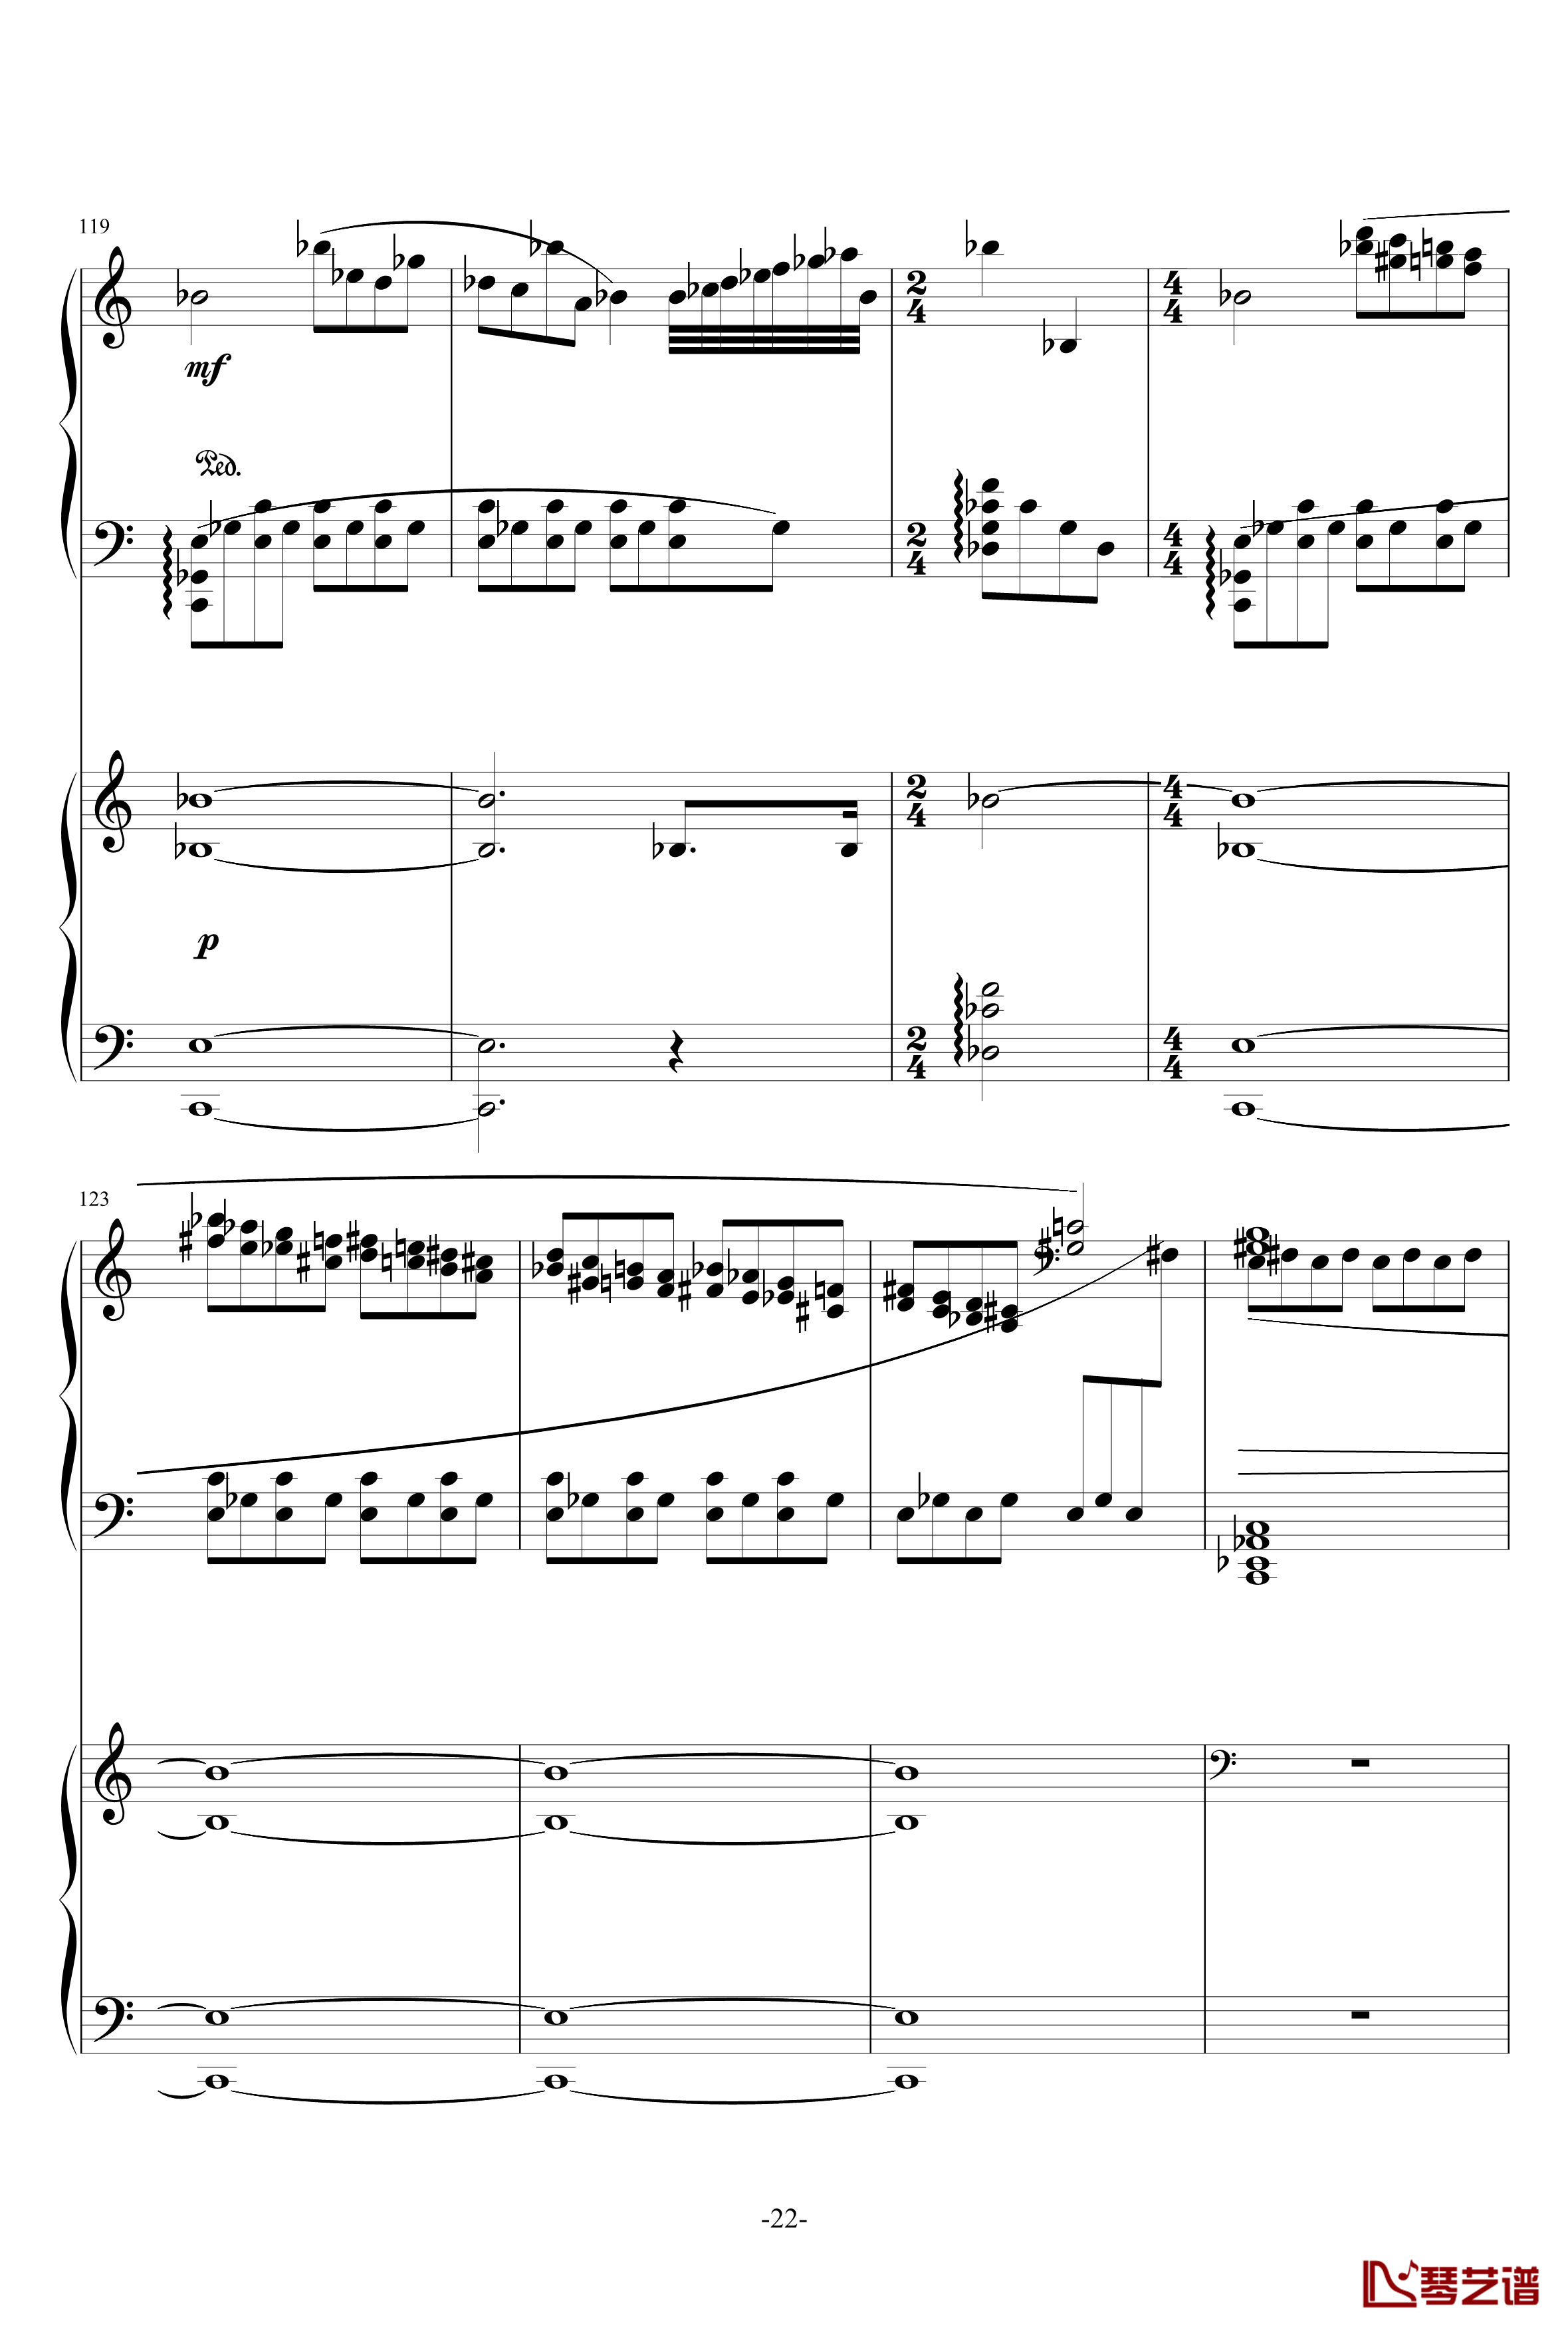 普罗科菲耶夫第三钢琴协奏曲第二乐章钢琴谱22